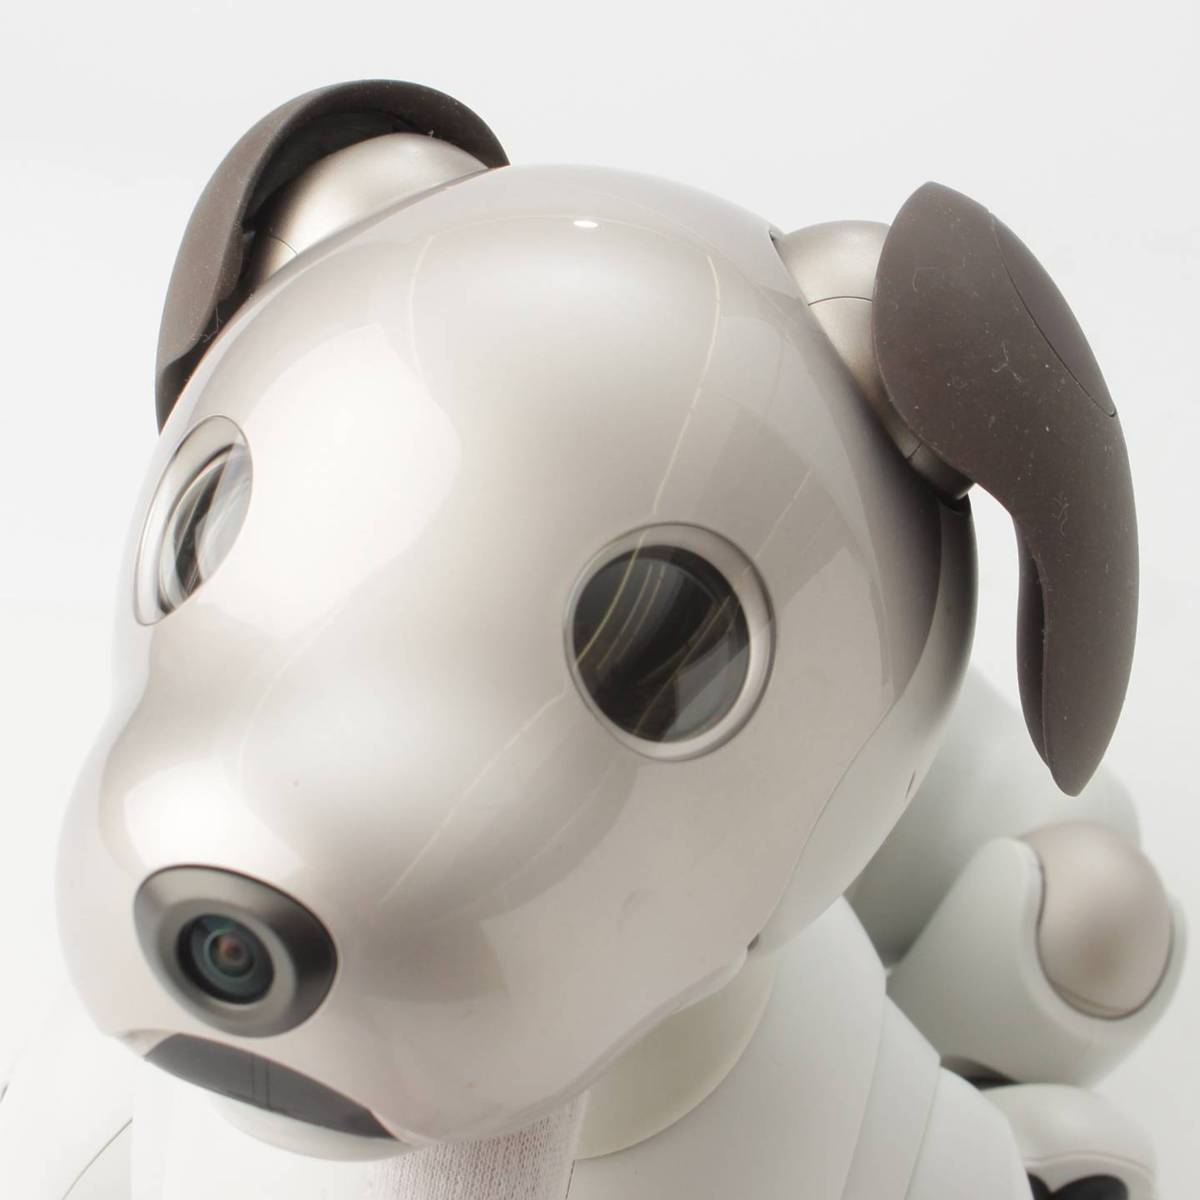 ソニー(SONY) アイボ aibo 犬型 バーチャル ペット ロボット ERS-1000 ホワイト